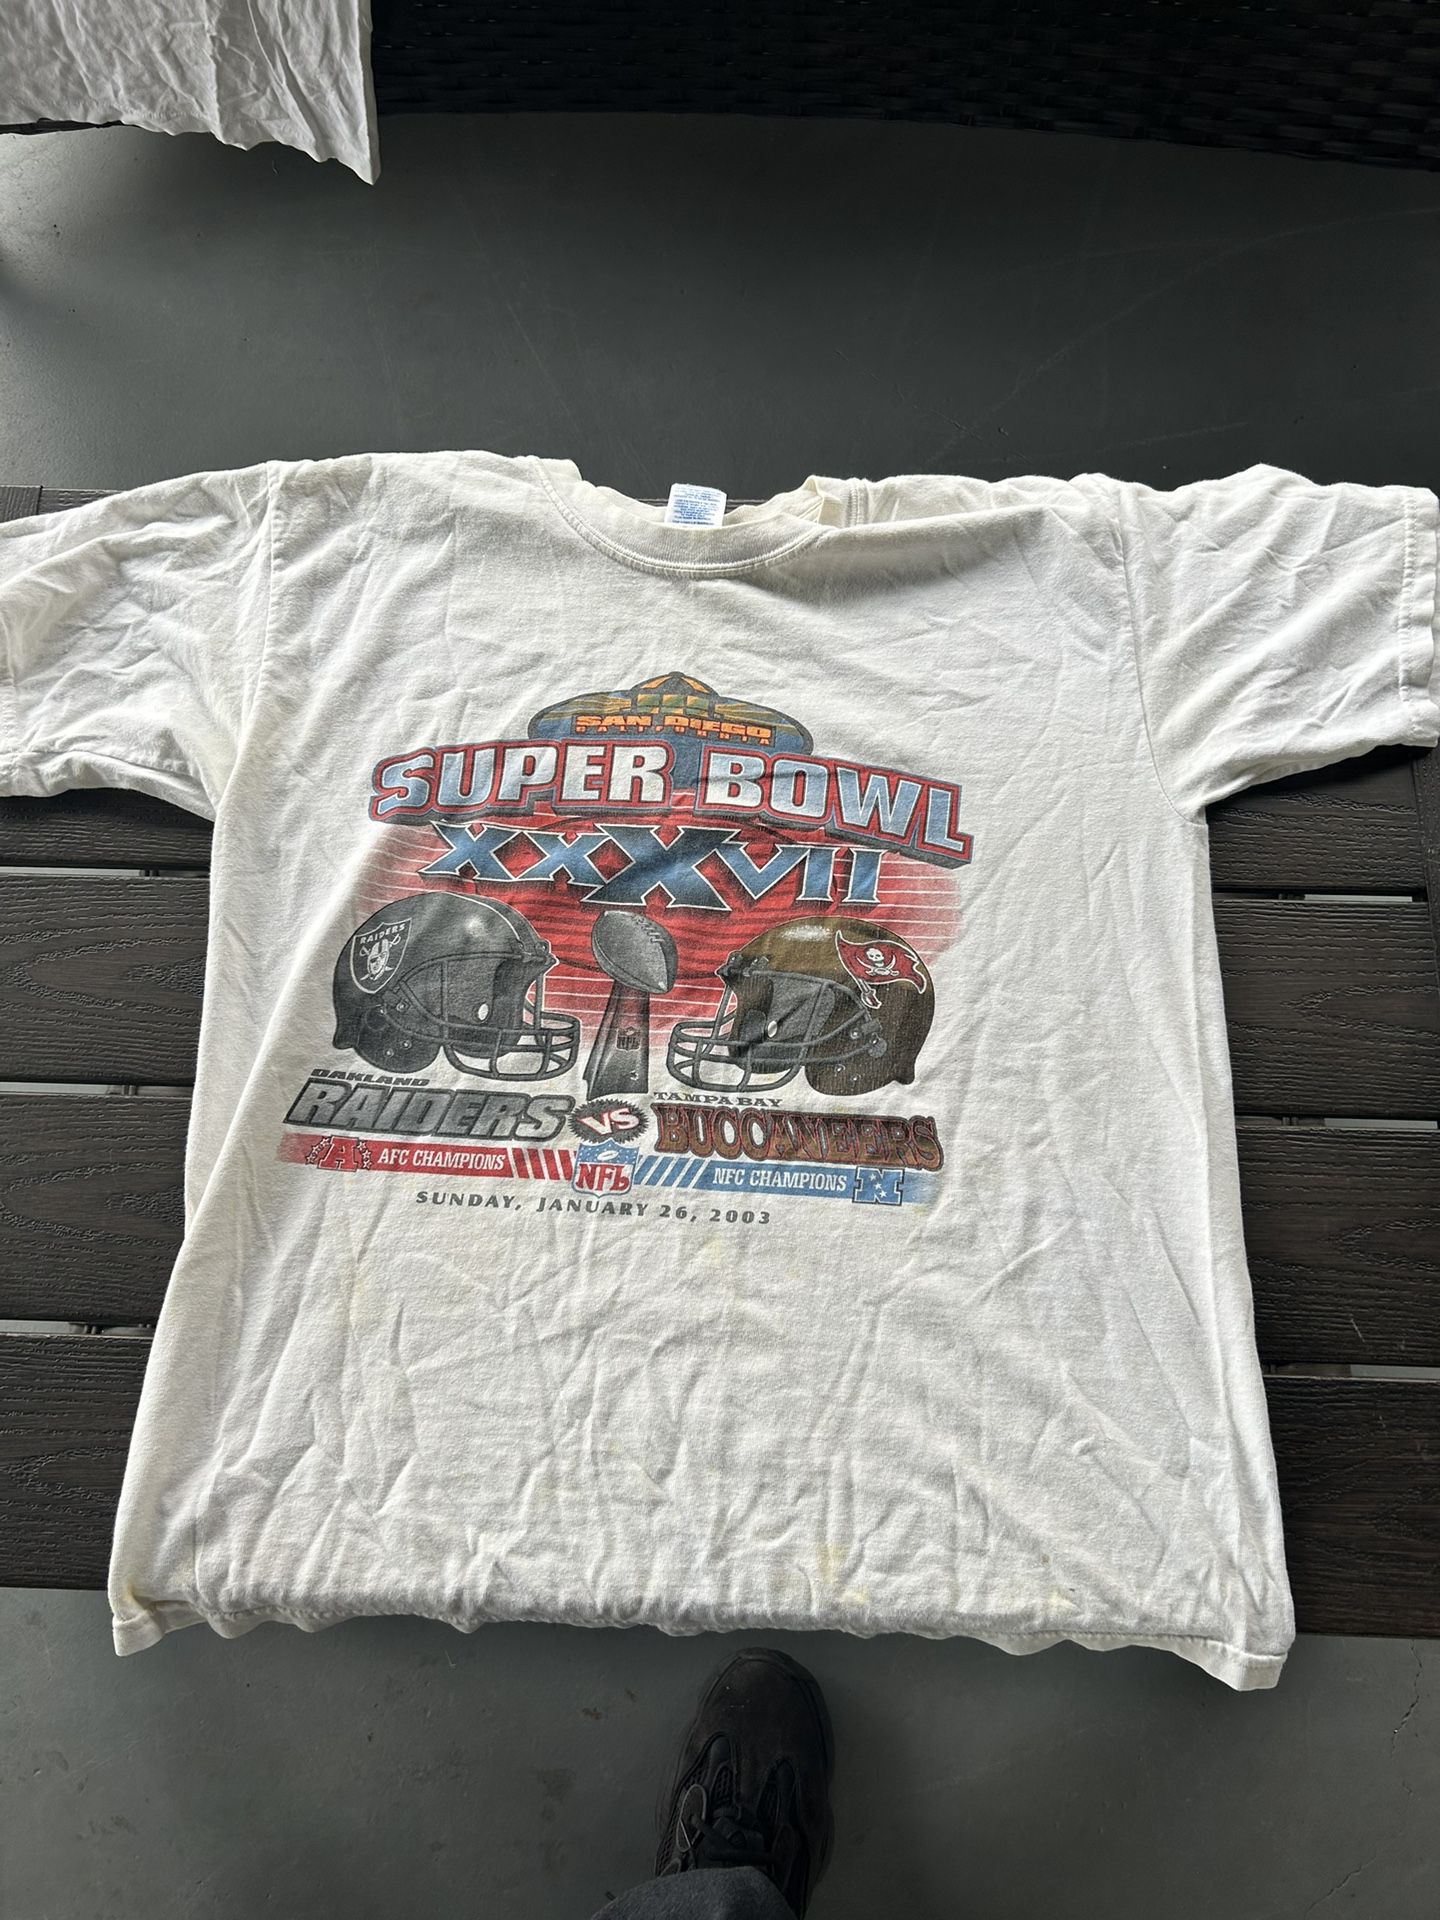 Vintage NFL T Shirt 